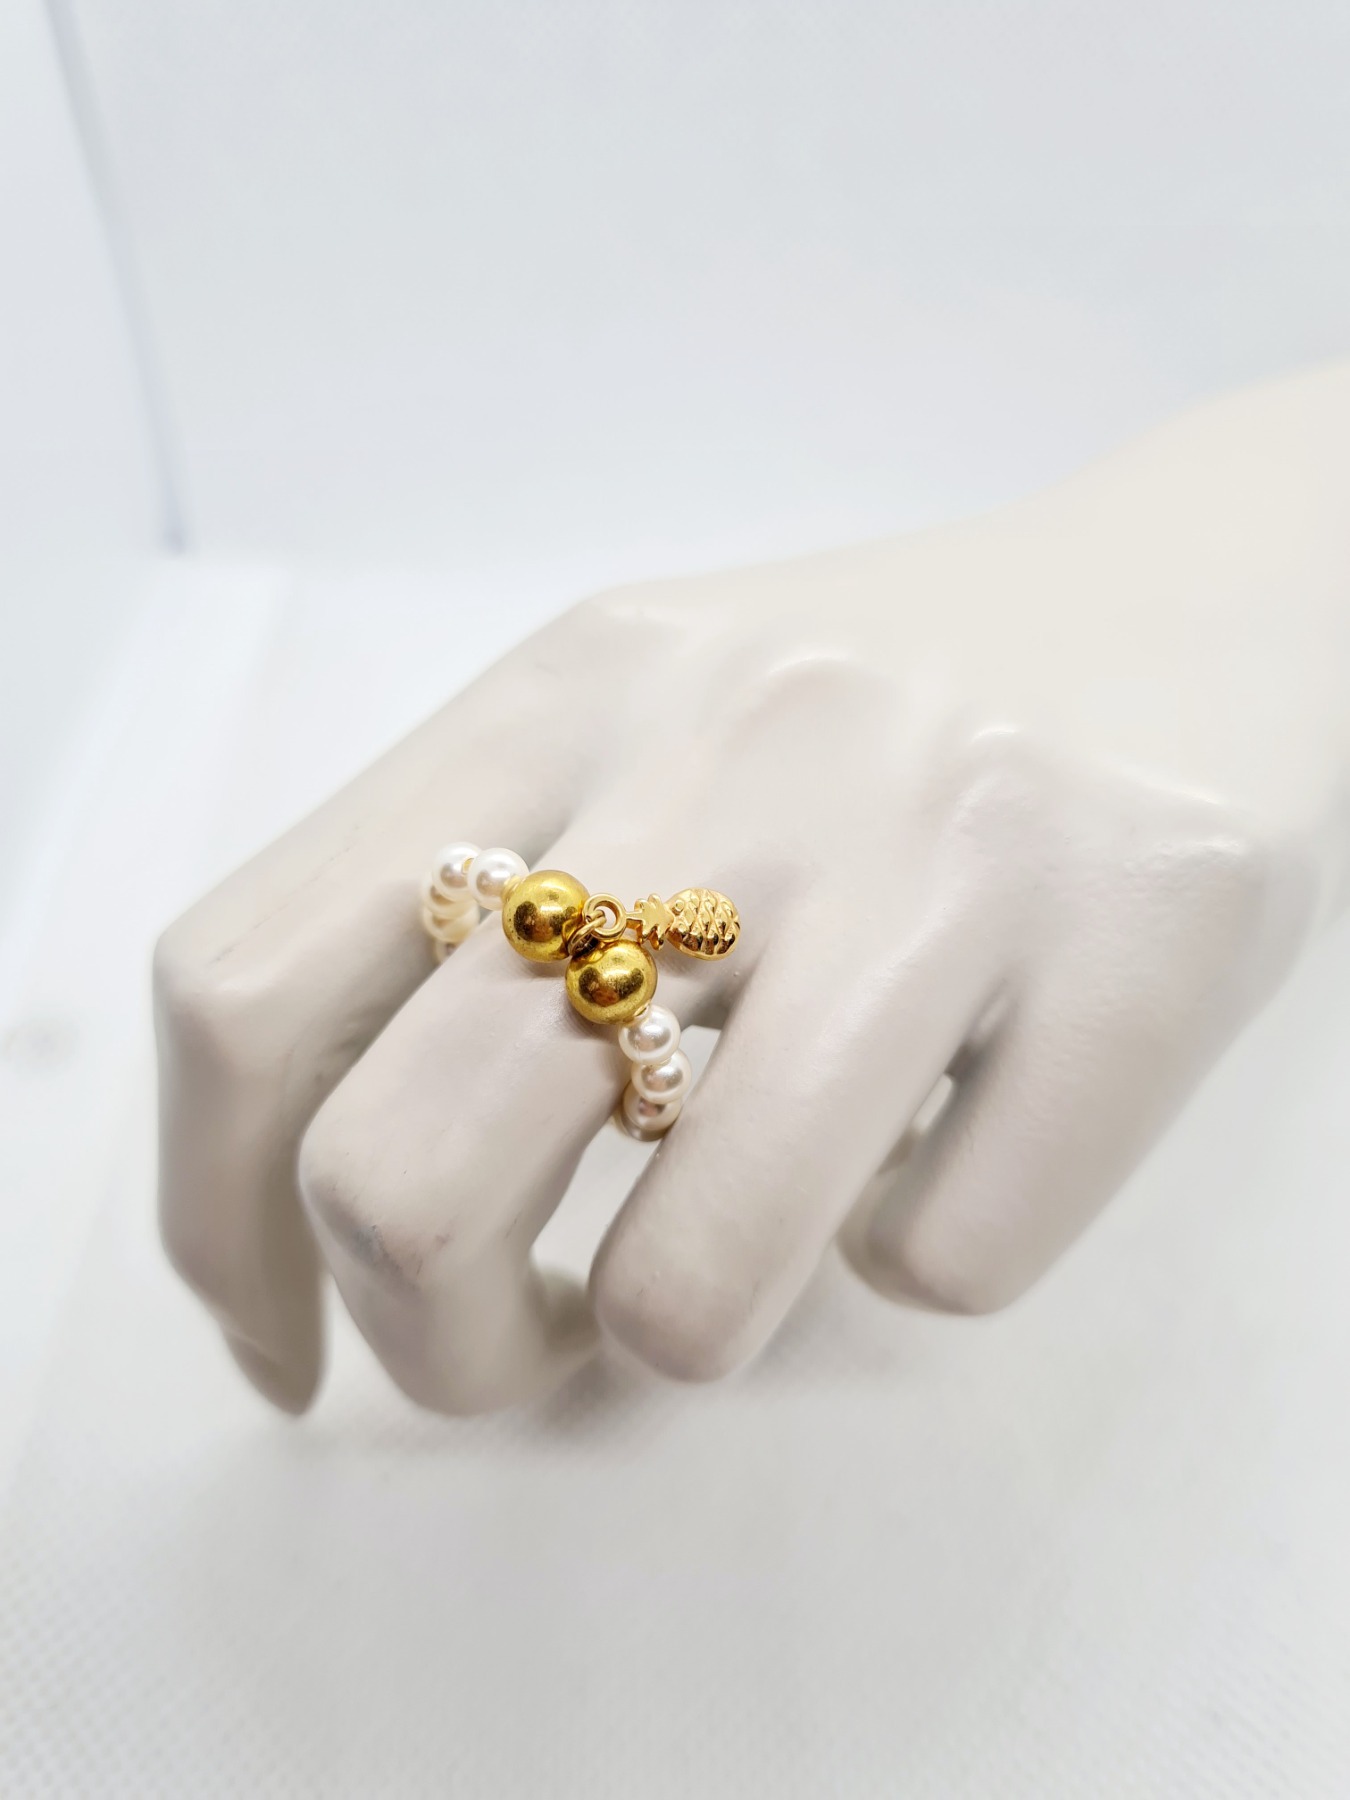 Ringe aus Swarovski Crystal Pearls in mauve flieder und ivory 9